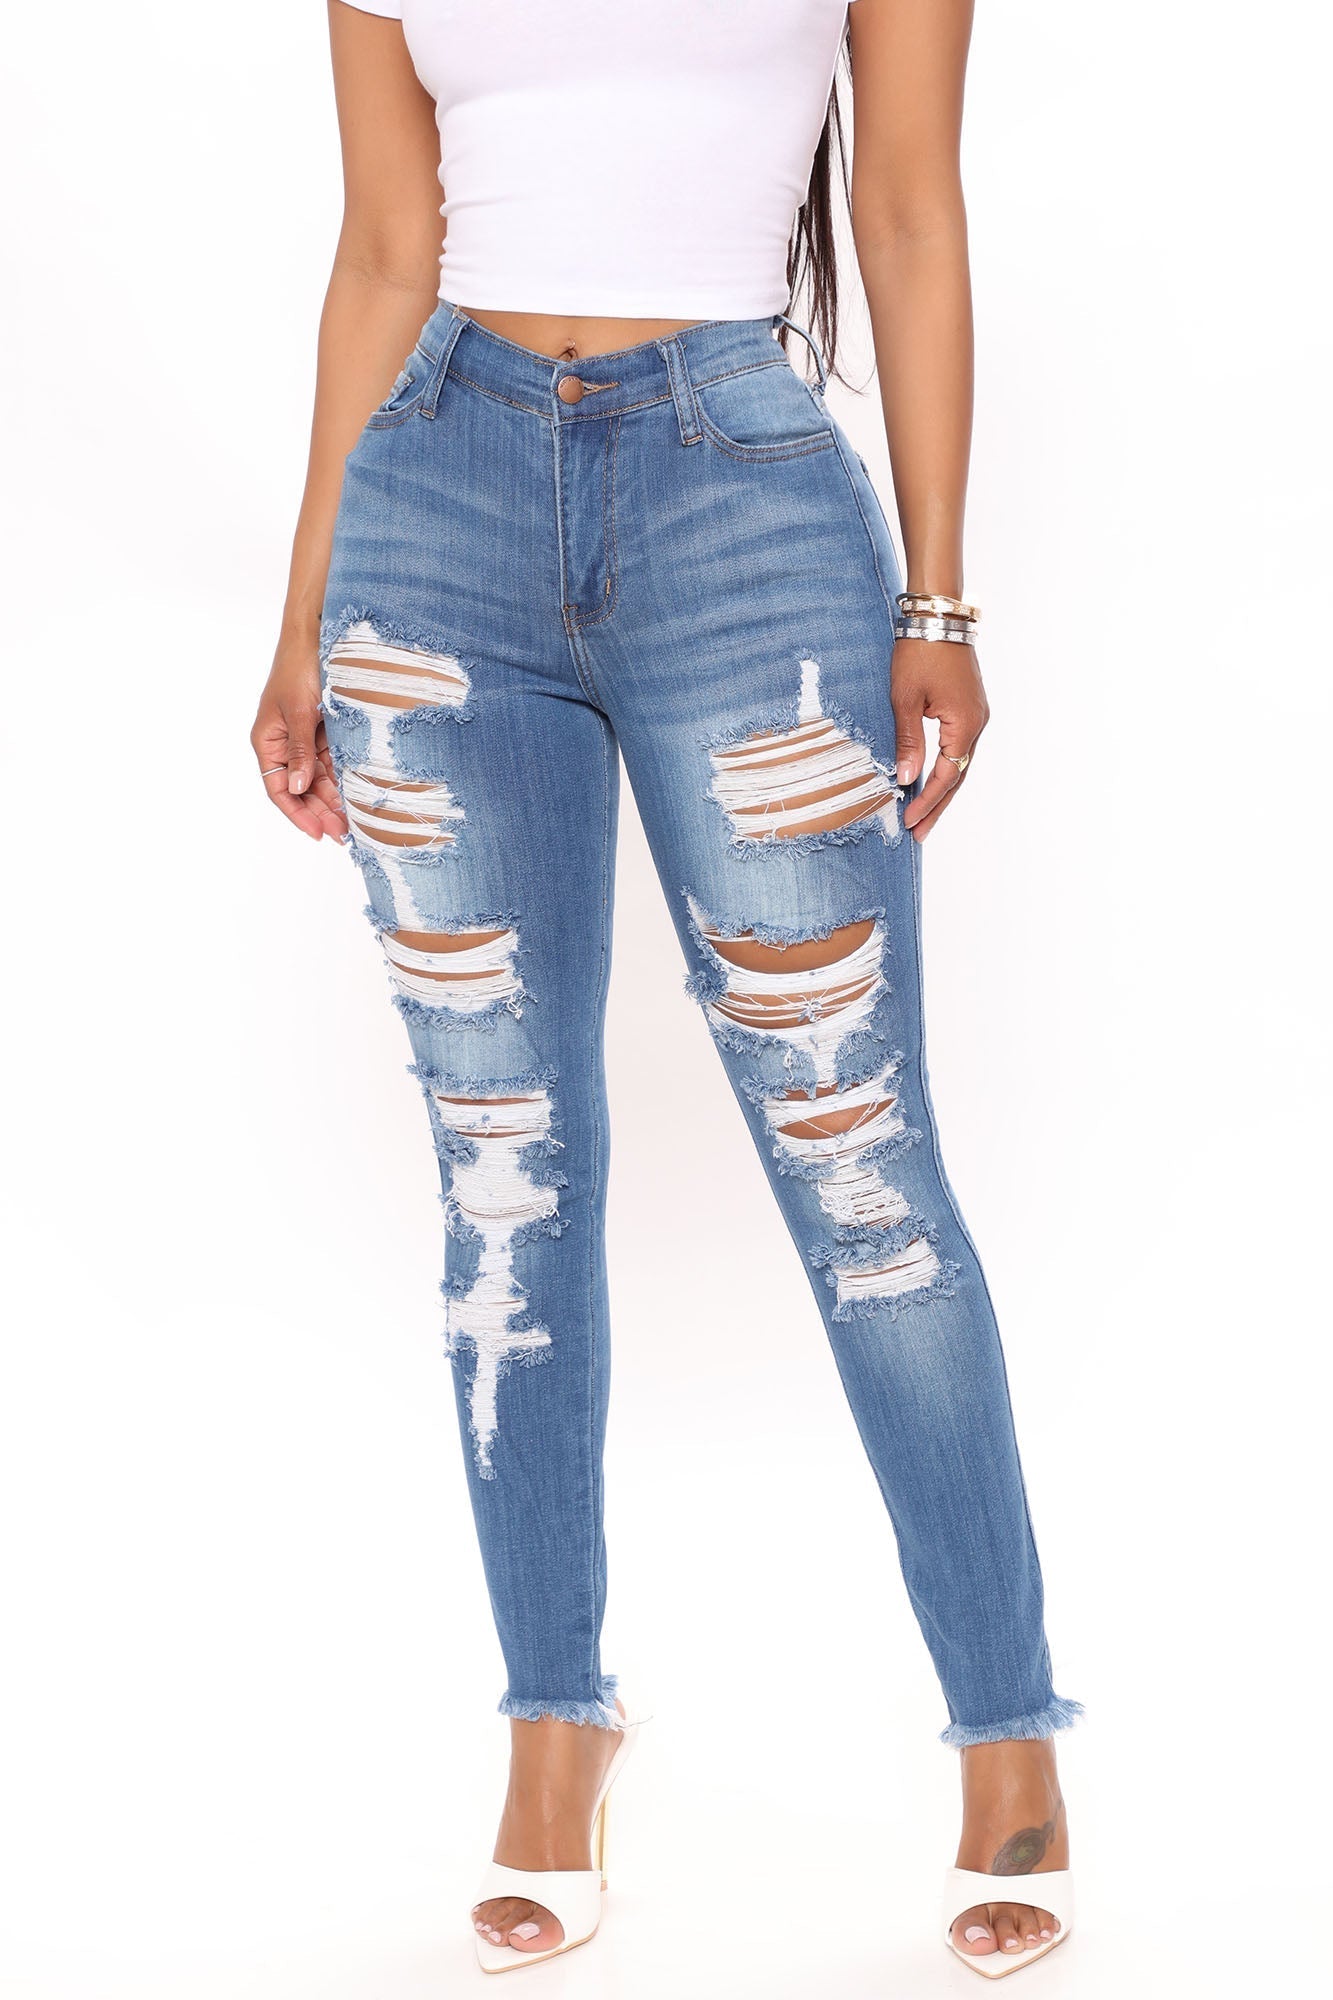 La Jolla Super Stretch Skinny Jeans - Medium Blue Wash – VP Clothes